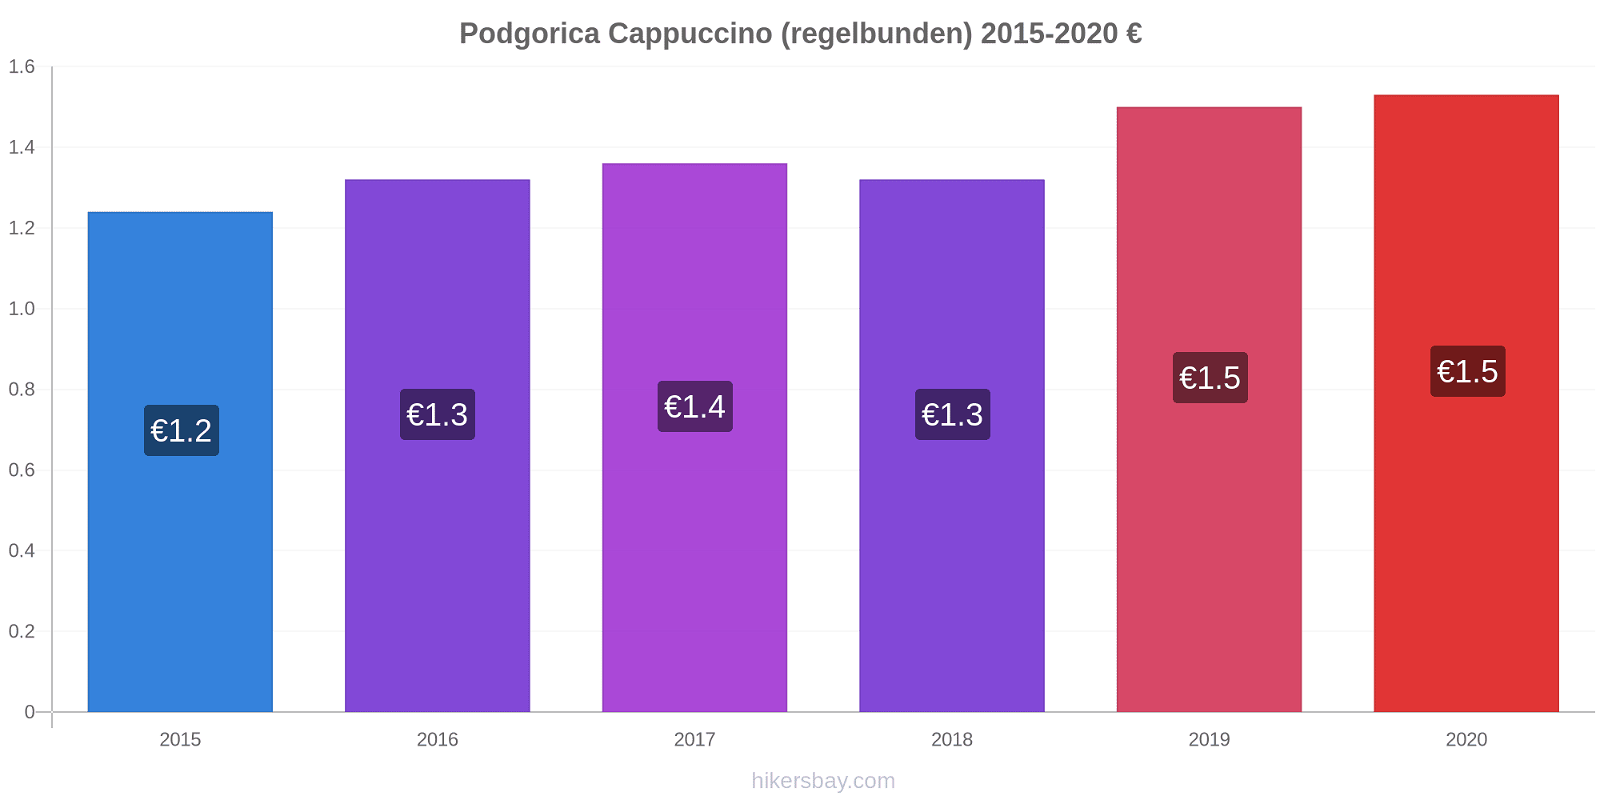 Podgorica prisförändringar Cappuccino (regelbunden) hikersbay.com